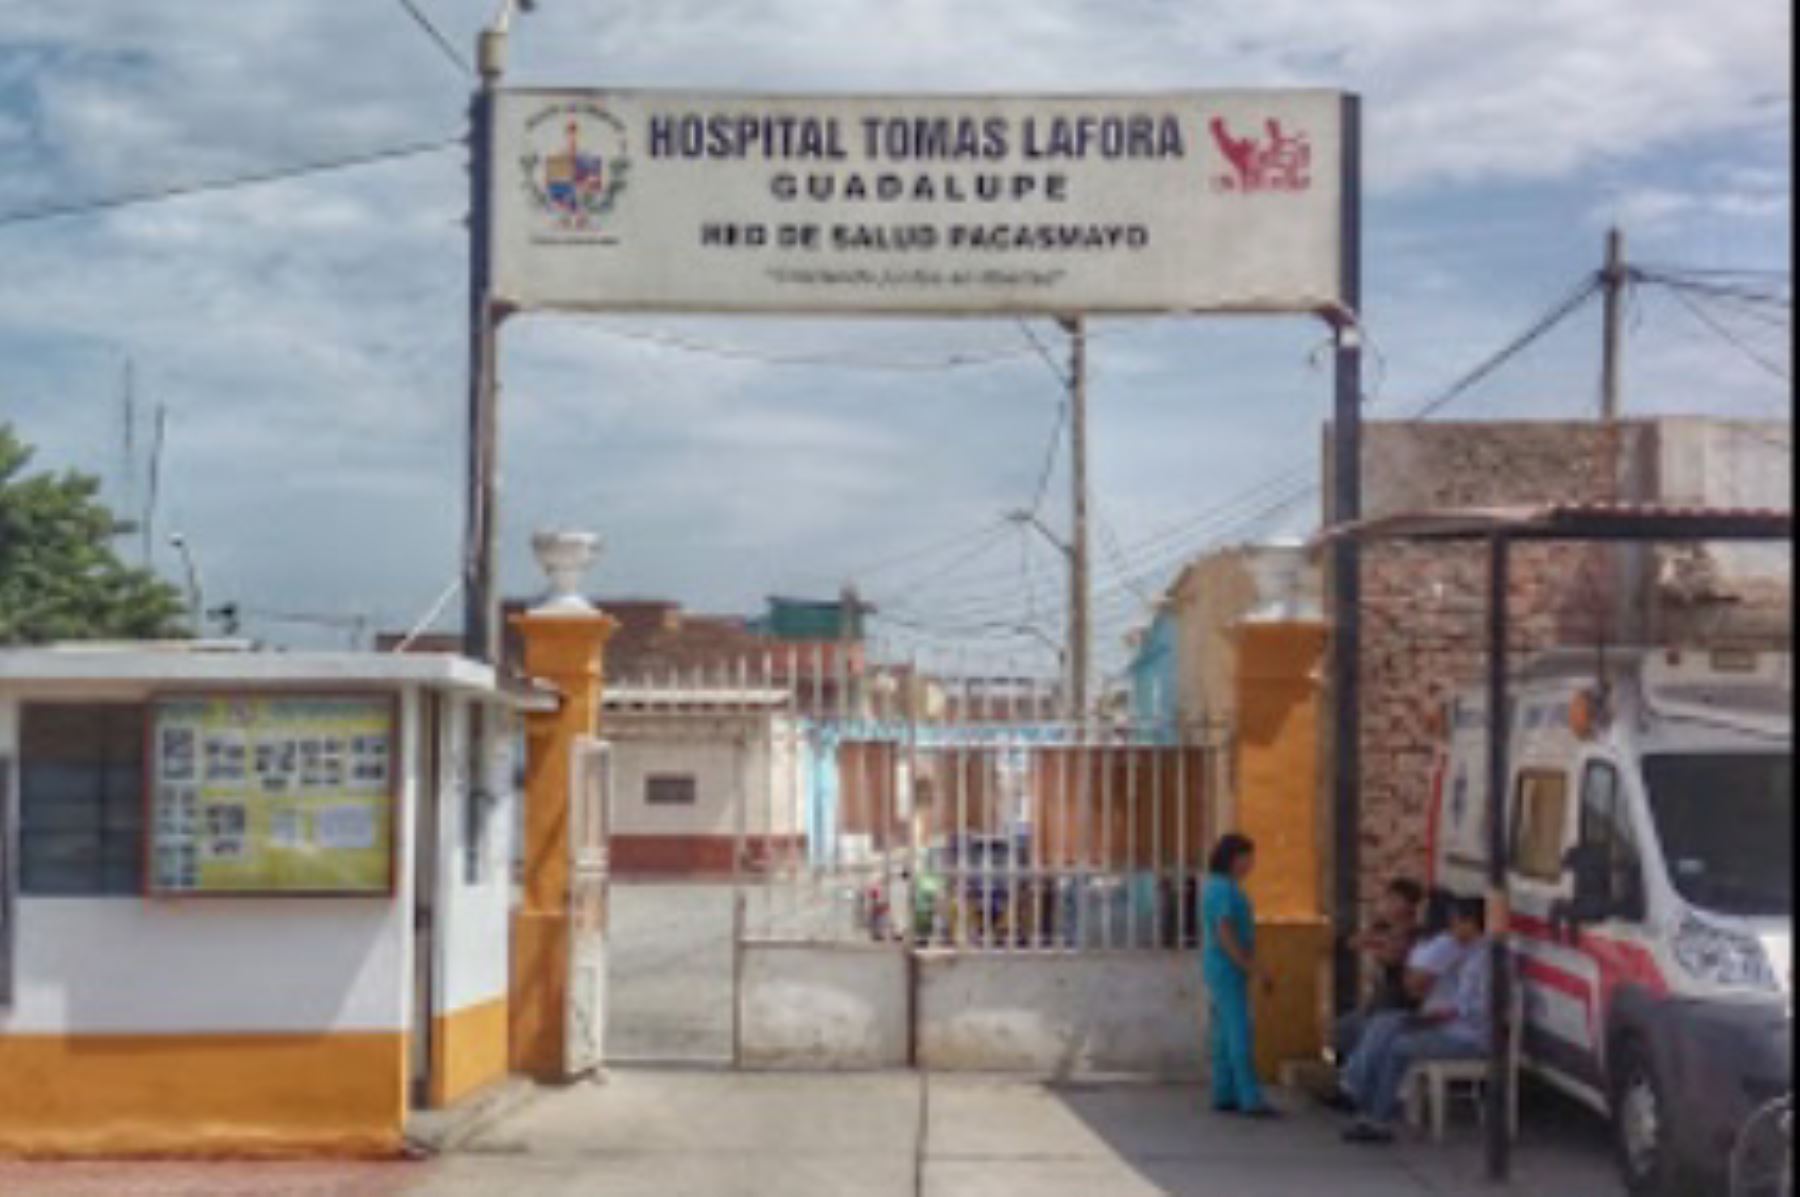 El hospital Tomás Lafora fue creado en 1896 y recibe a cientos de guadalupanos y pobladores de localidades aledañas. Foto: Internet/Paco Iparraguirre